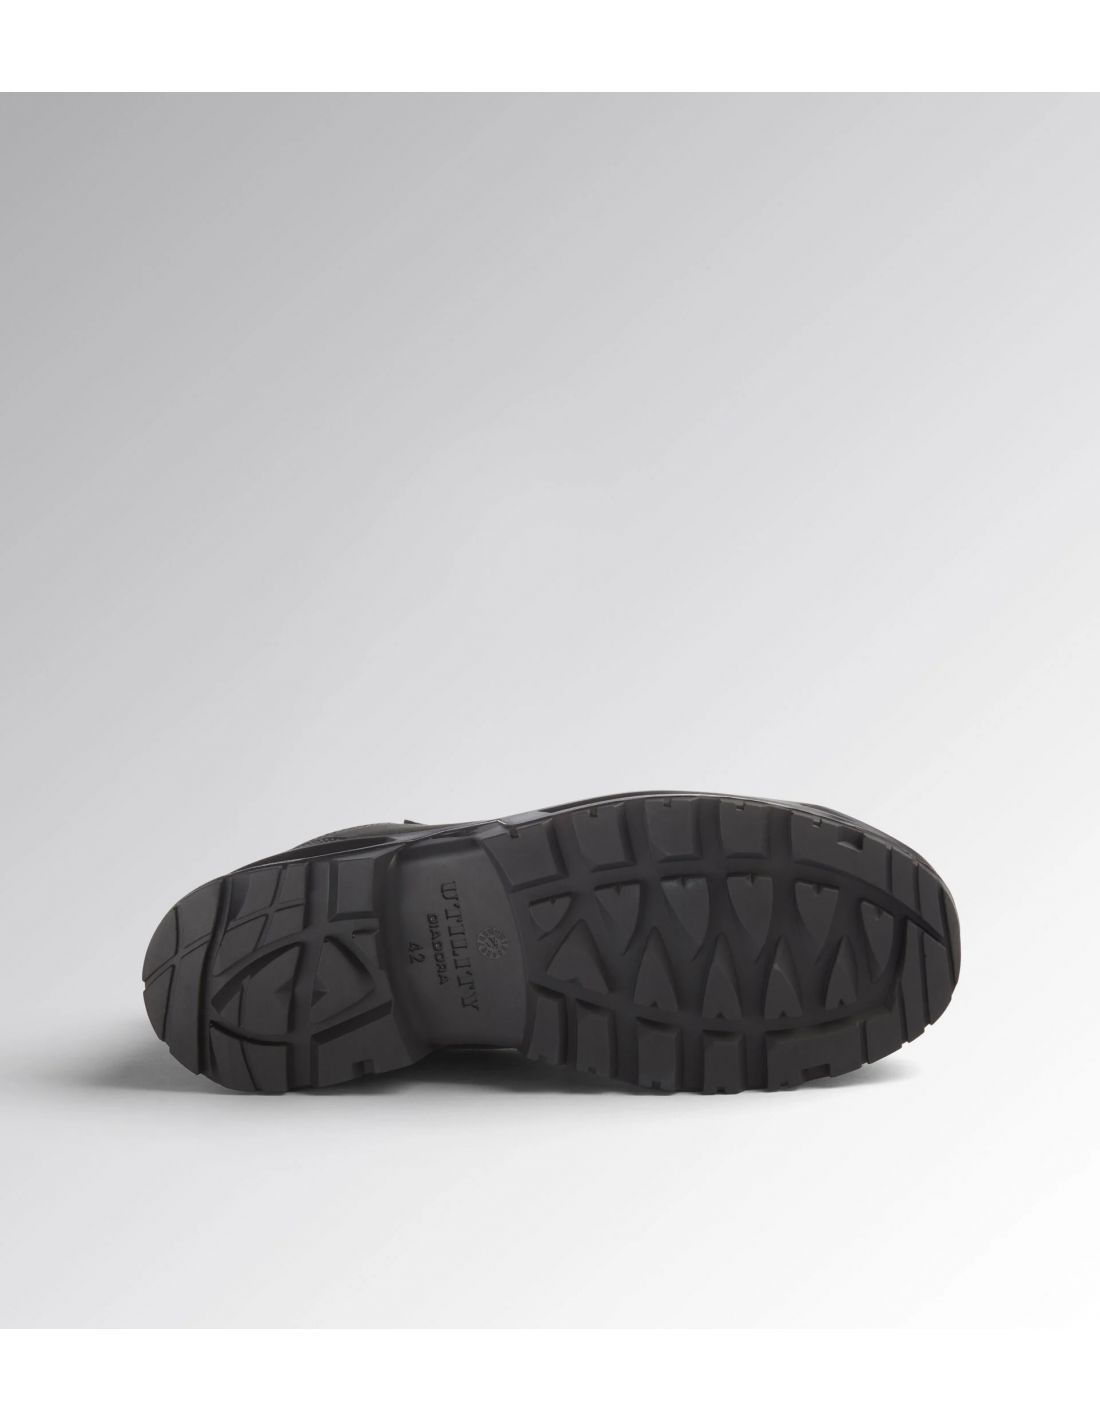 Chaussures de sécurité Country Low S3 SRC DIADORA Utility - Noires Basses